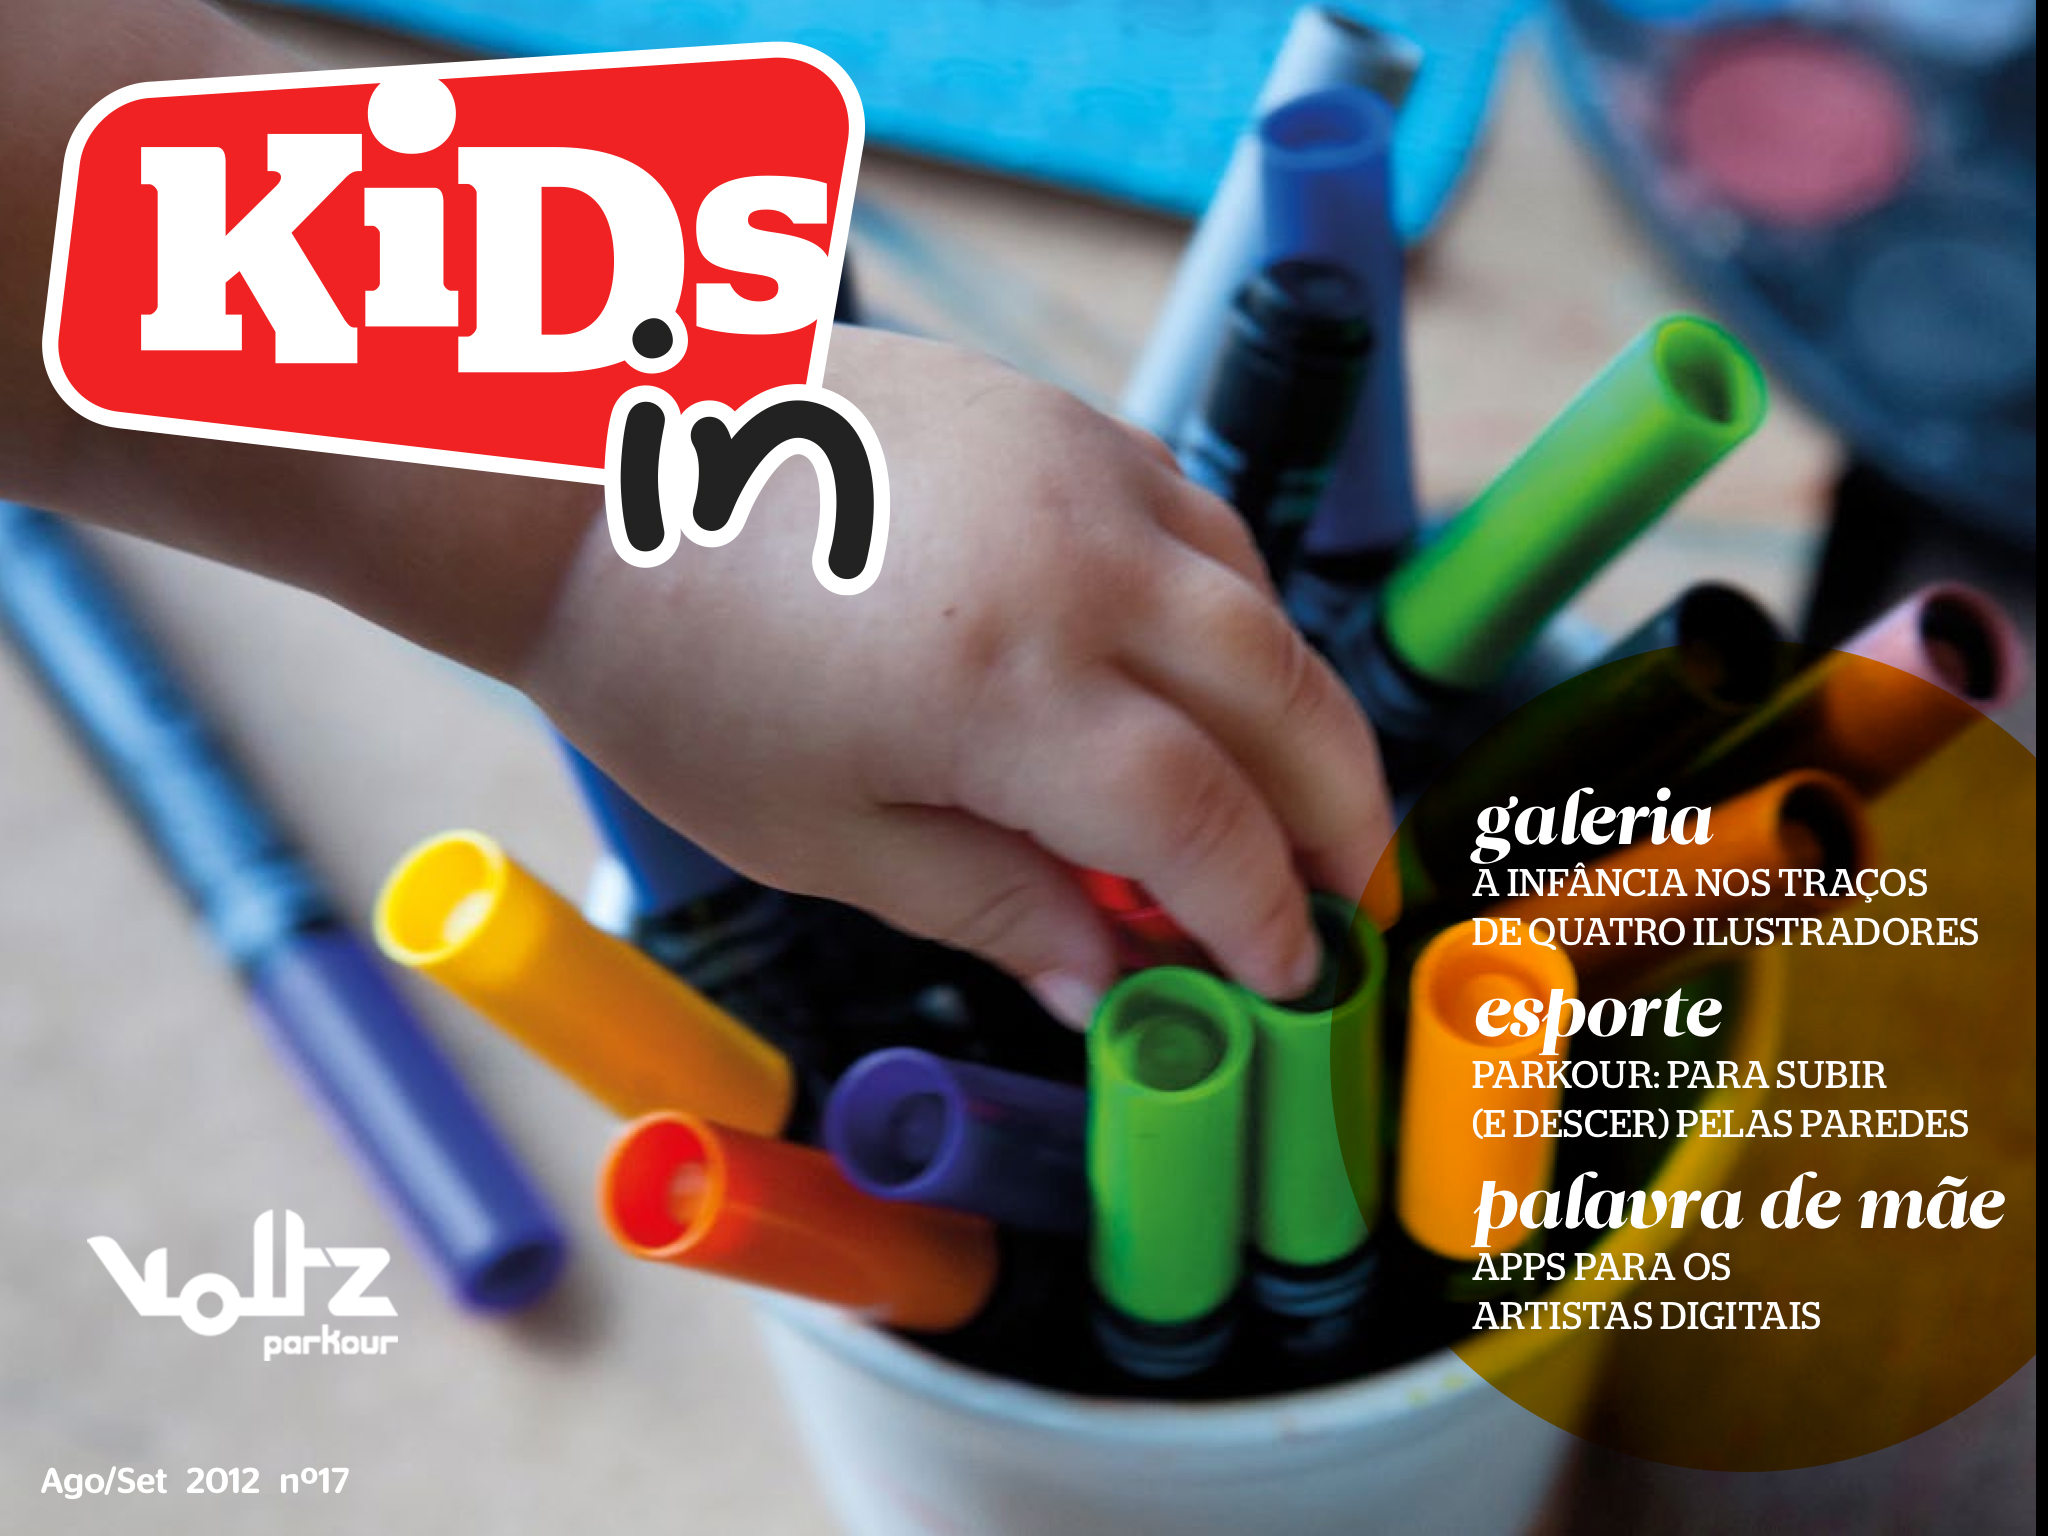 Revista Kidsin em App para Ipad - parkour